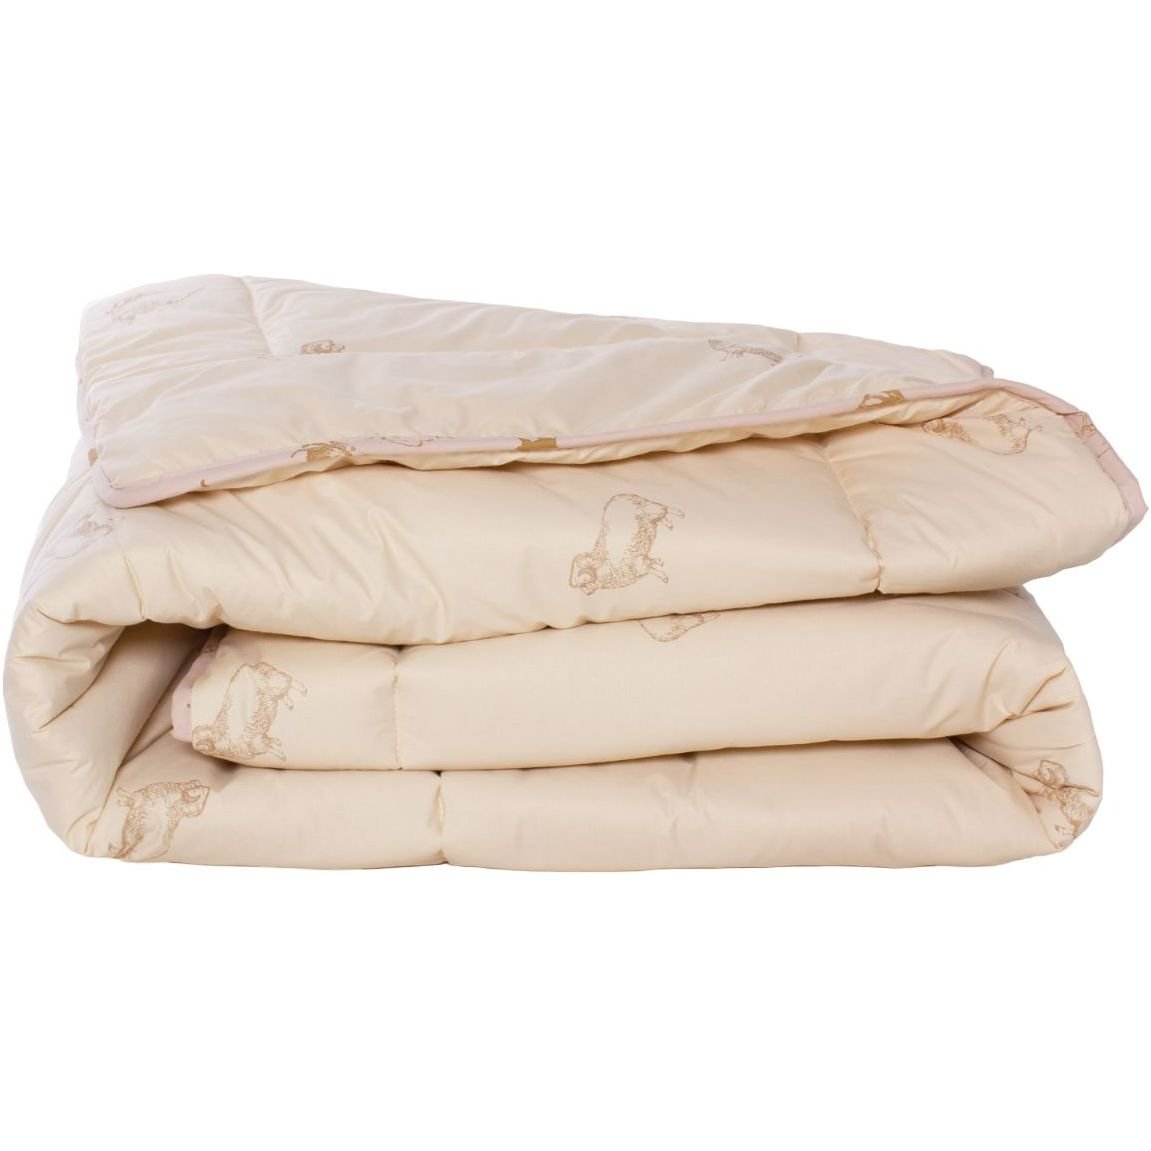 Одеяло шерстяное MirSon Gold Camel №023, демисезонное, 200x220 см, кремовое - фото 1